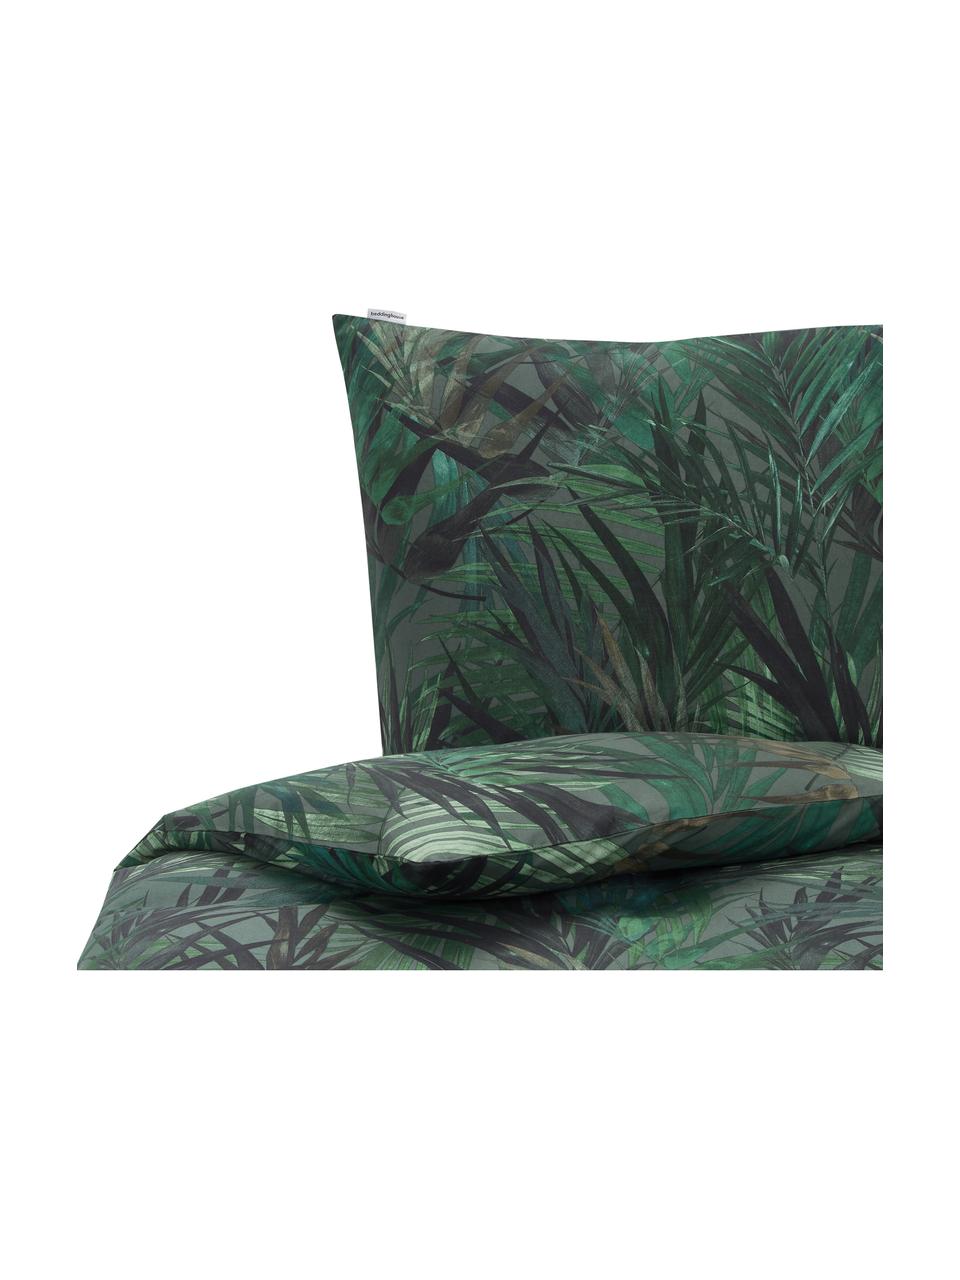 Pościel z bawełny Solitude, Odcienie zielonego i odcienie niebieskiego, 135 x 200 cm + 1 poduszka 80 x 80 cm